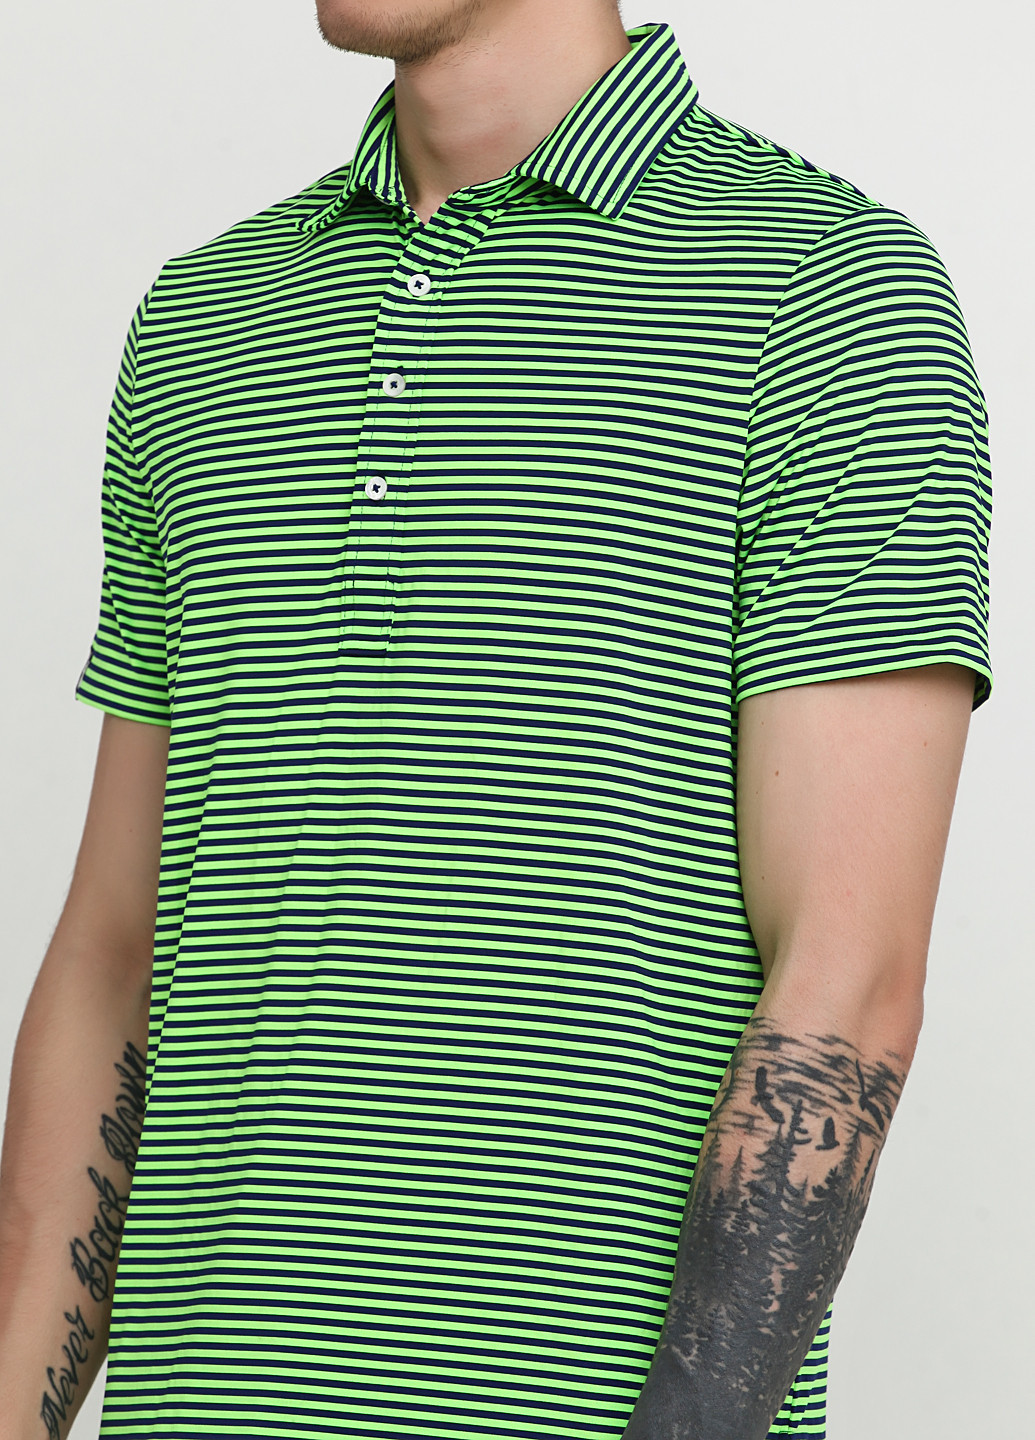 Цветная футболка-поло для мужчин Ralph Lauren в полоску